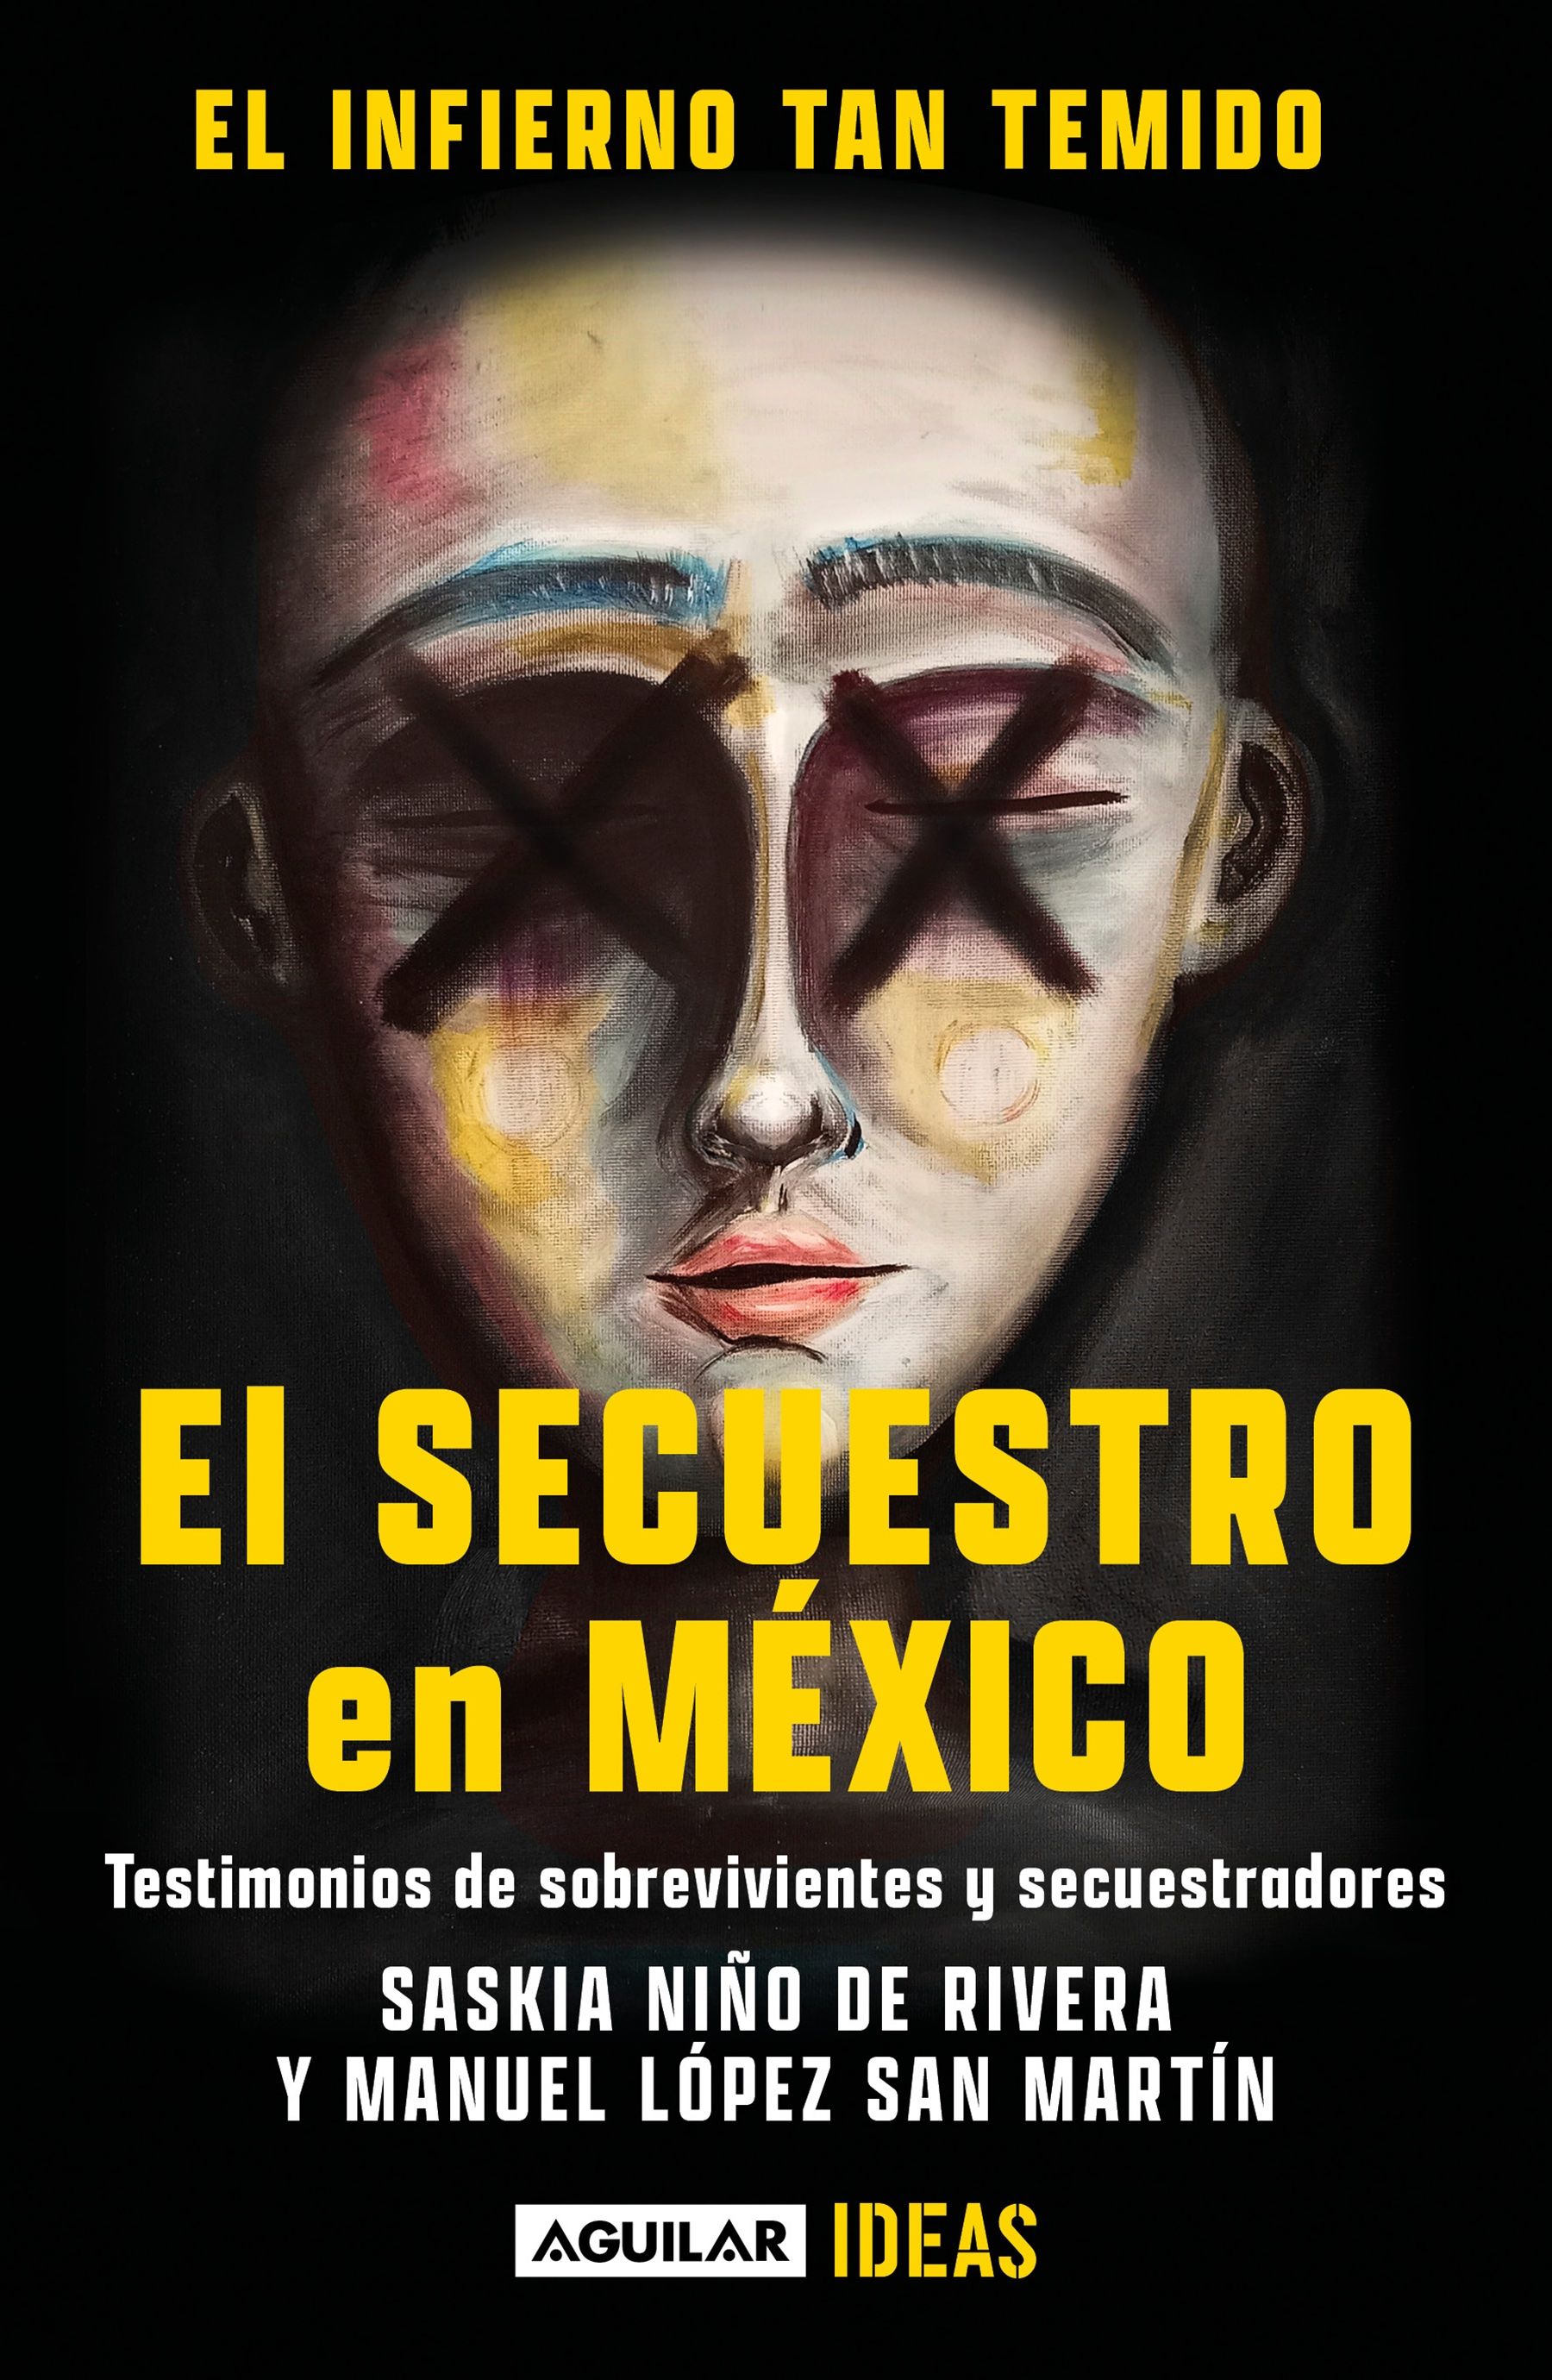 The book El infierno tan temido: El Secuestro en México